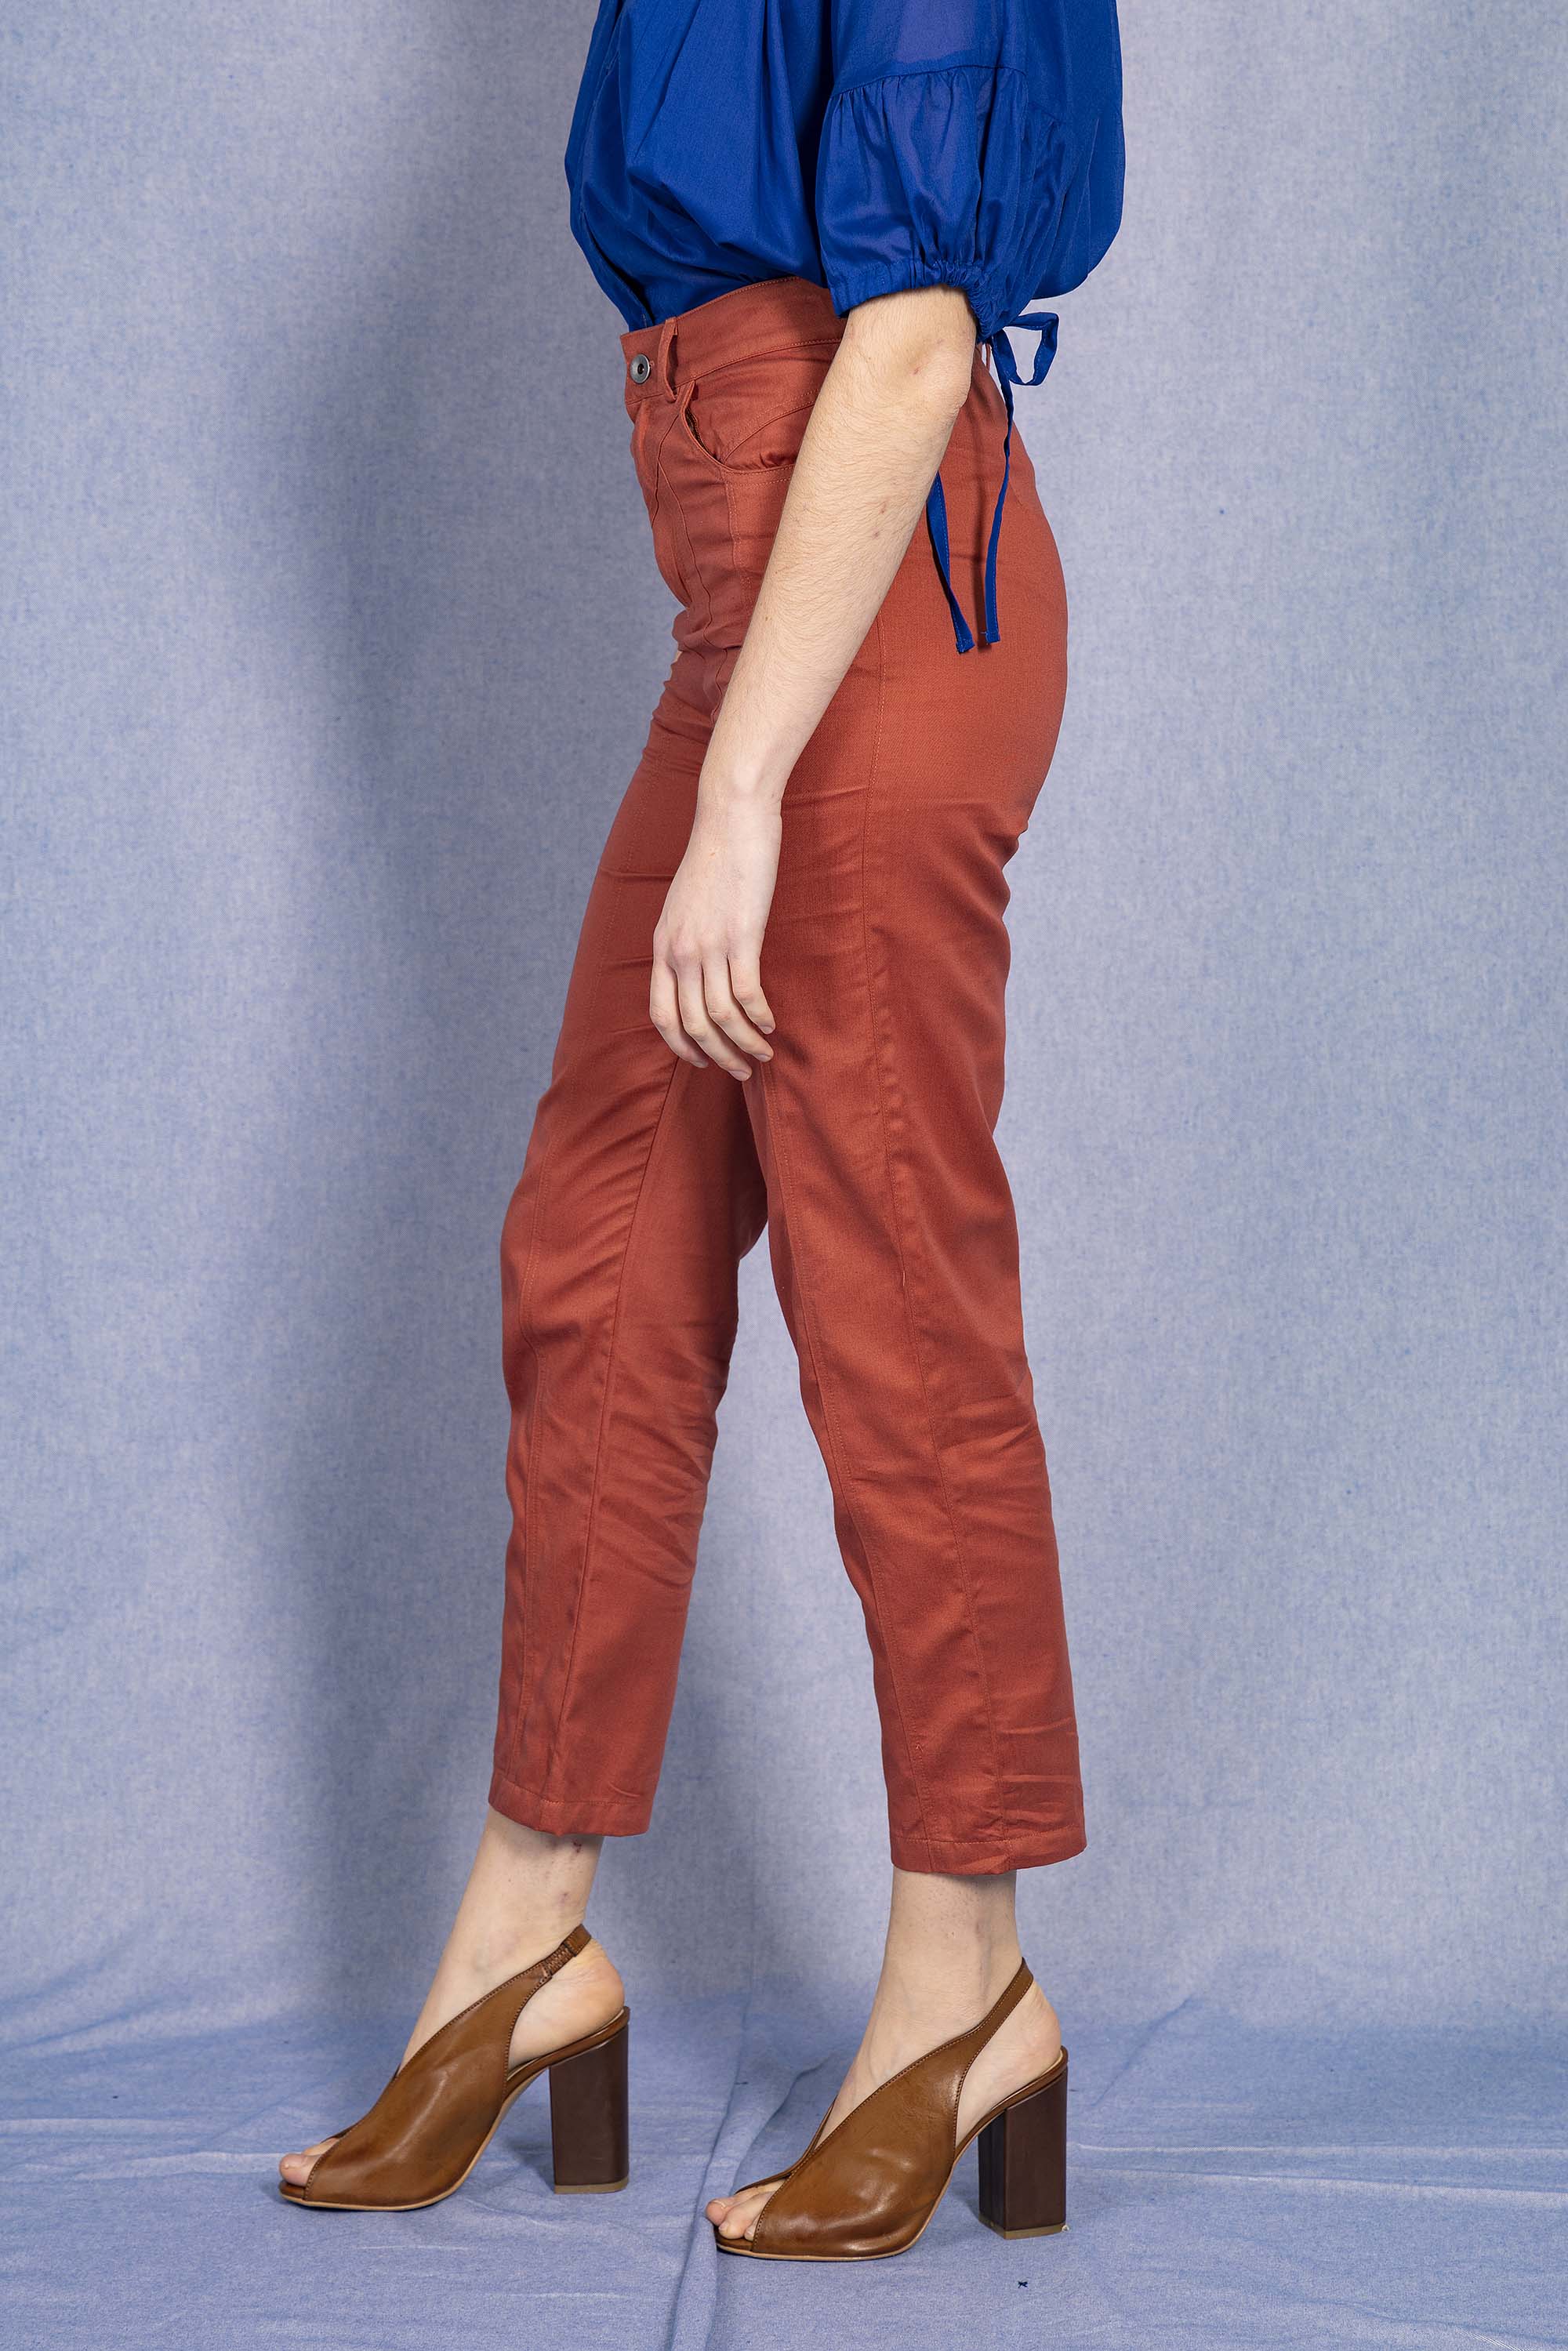 Pantalon Karima Rouge Brique parfaite alternative aux jeans, les pantalons en coton Misericordia sont uniques et confortables